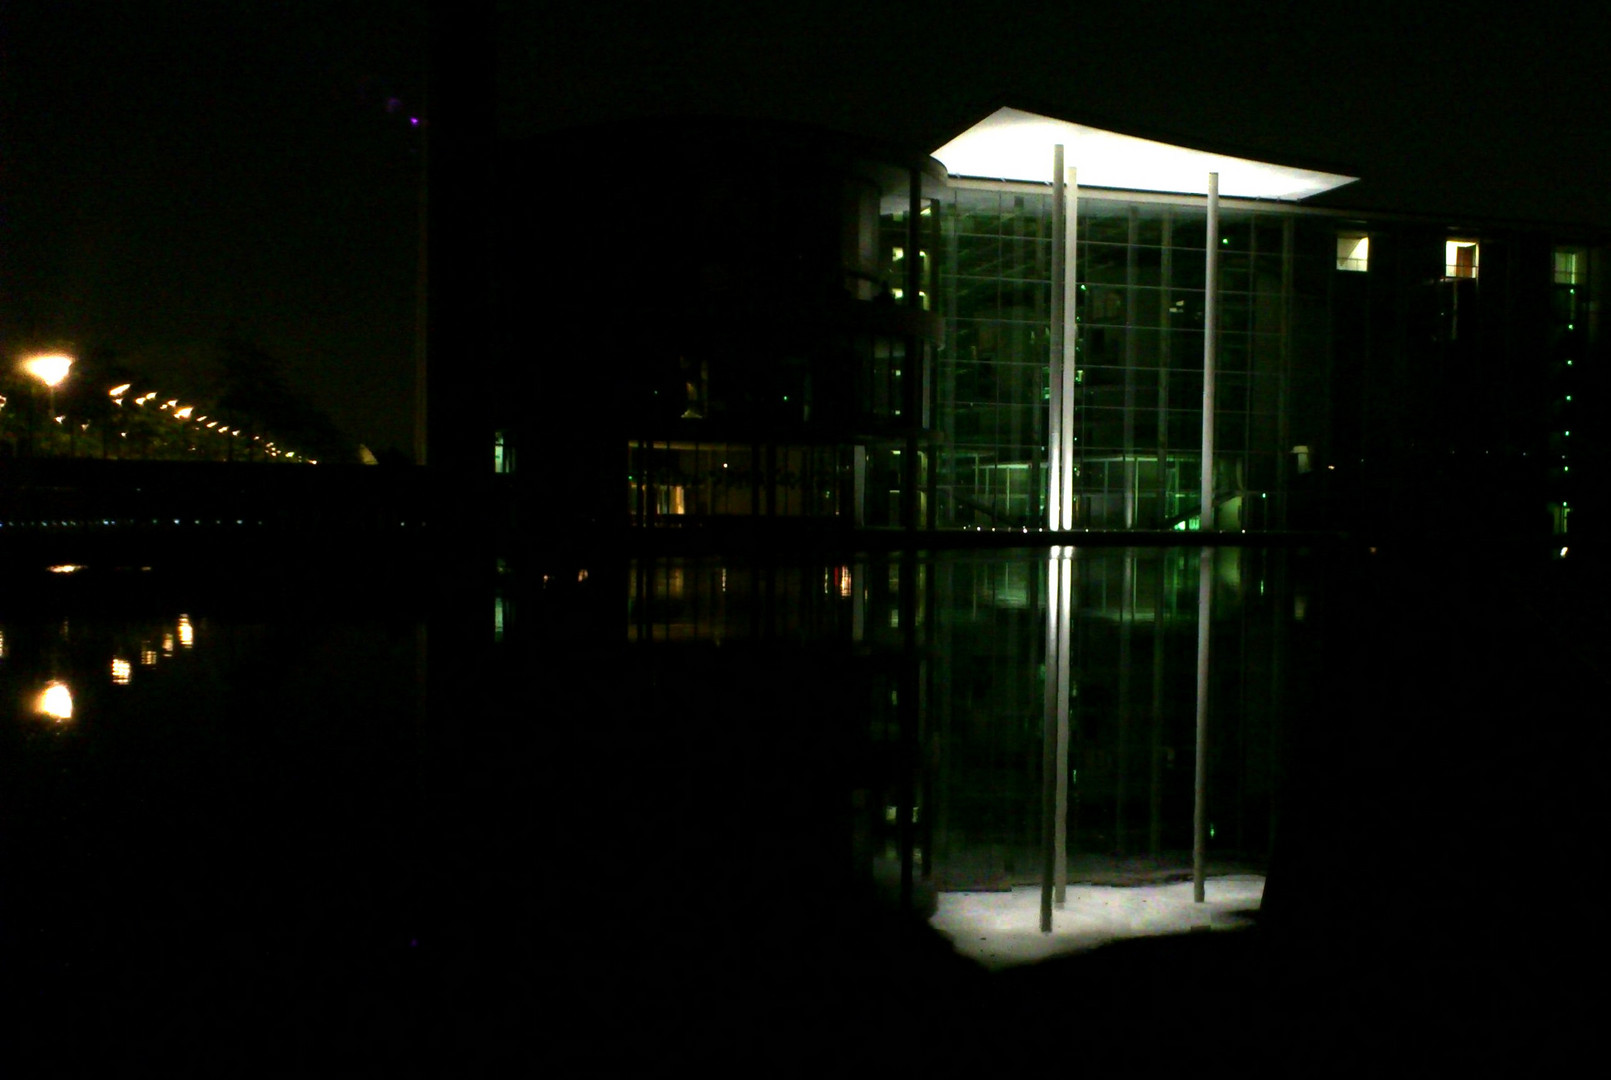 Reflections at night